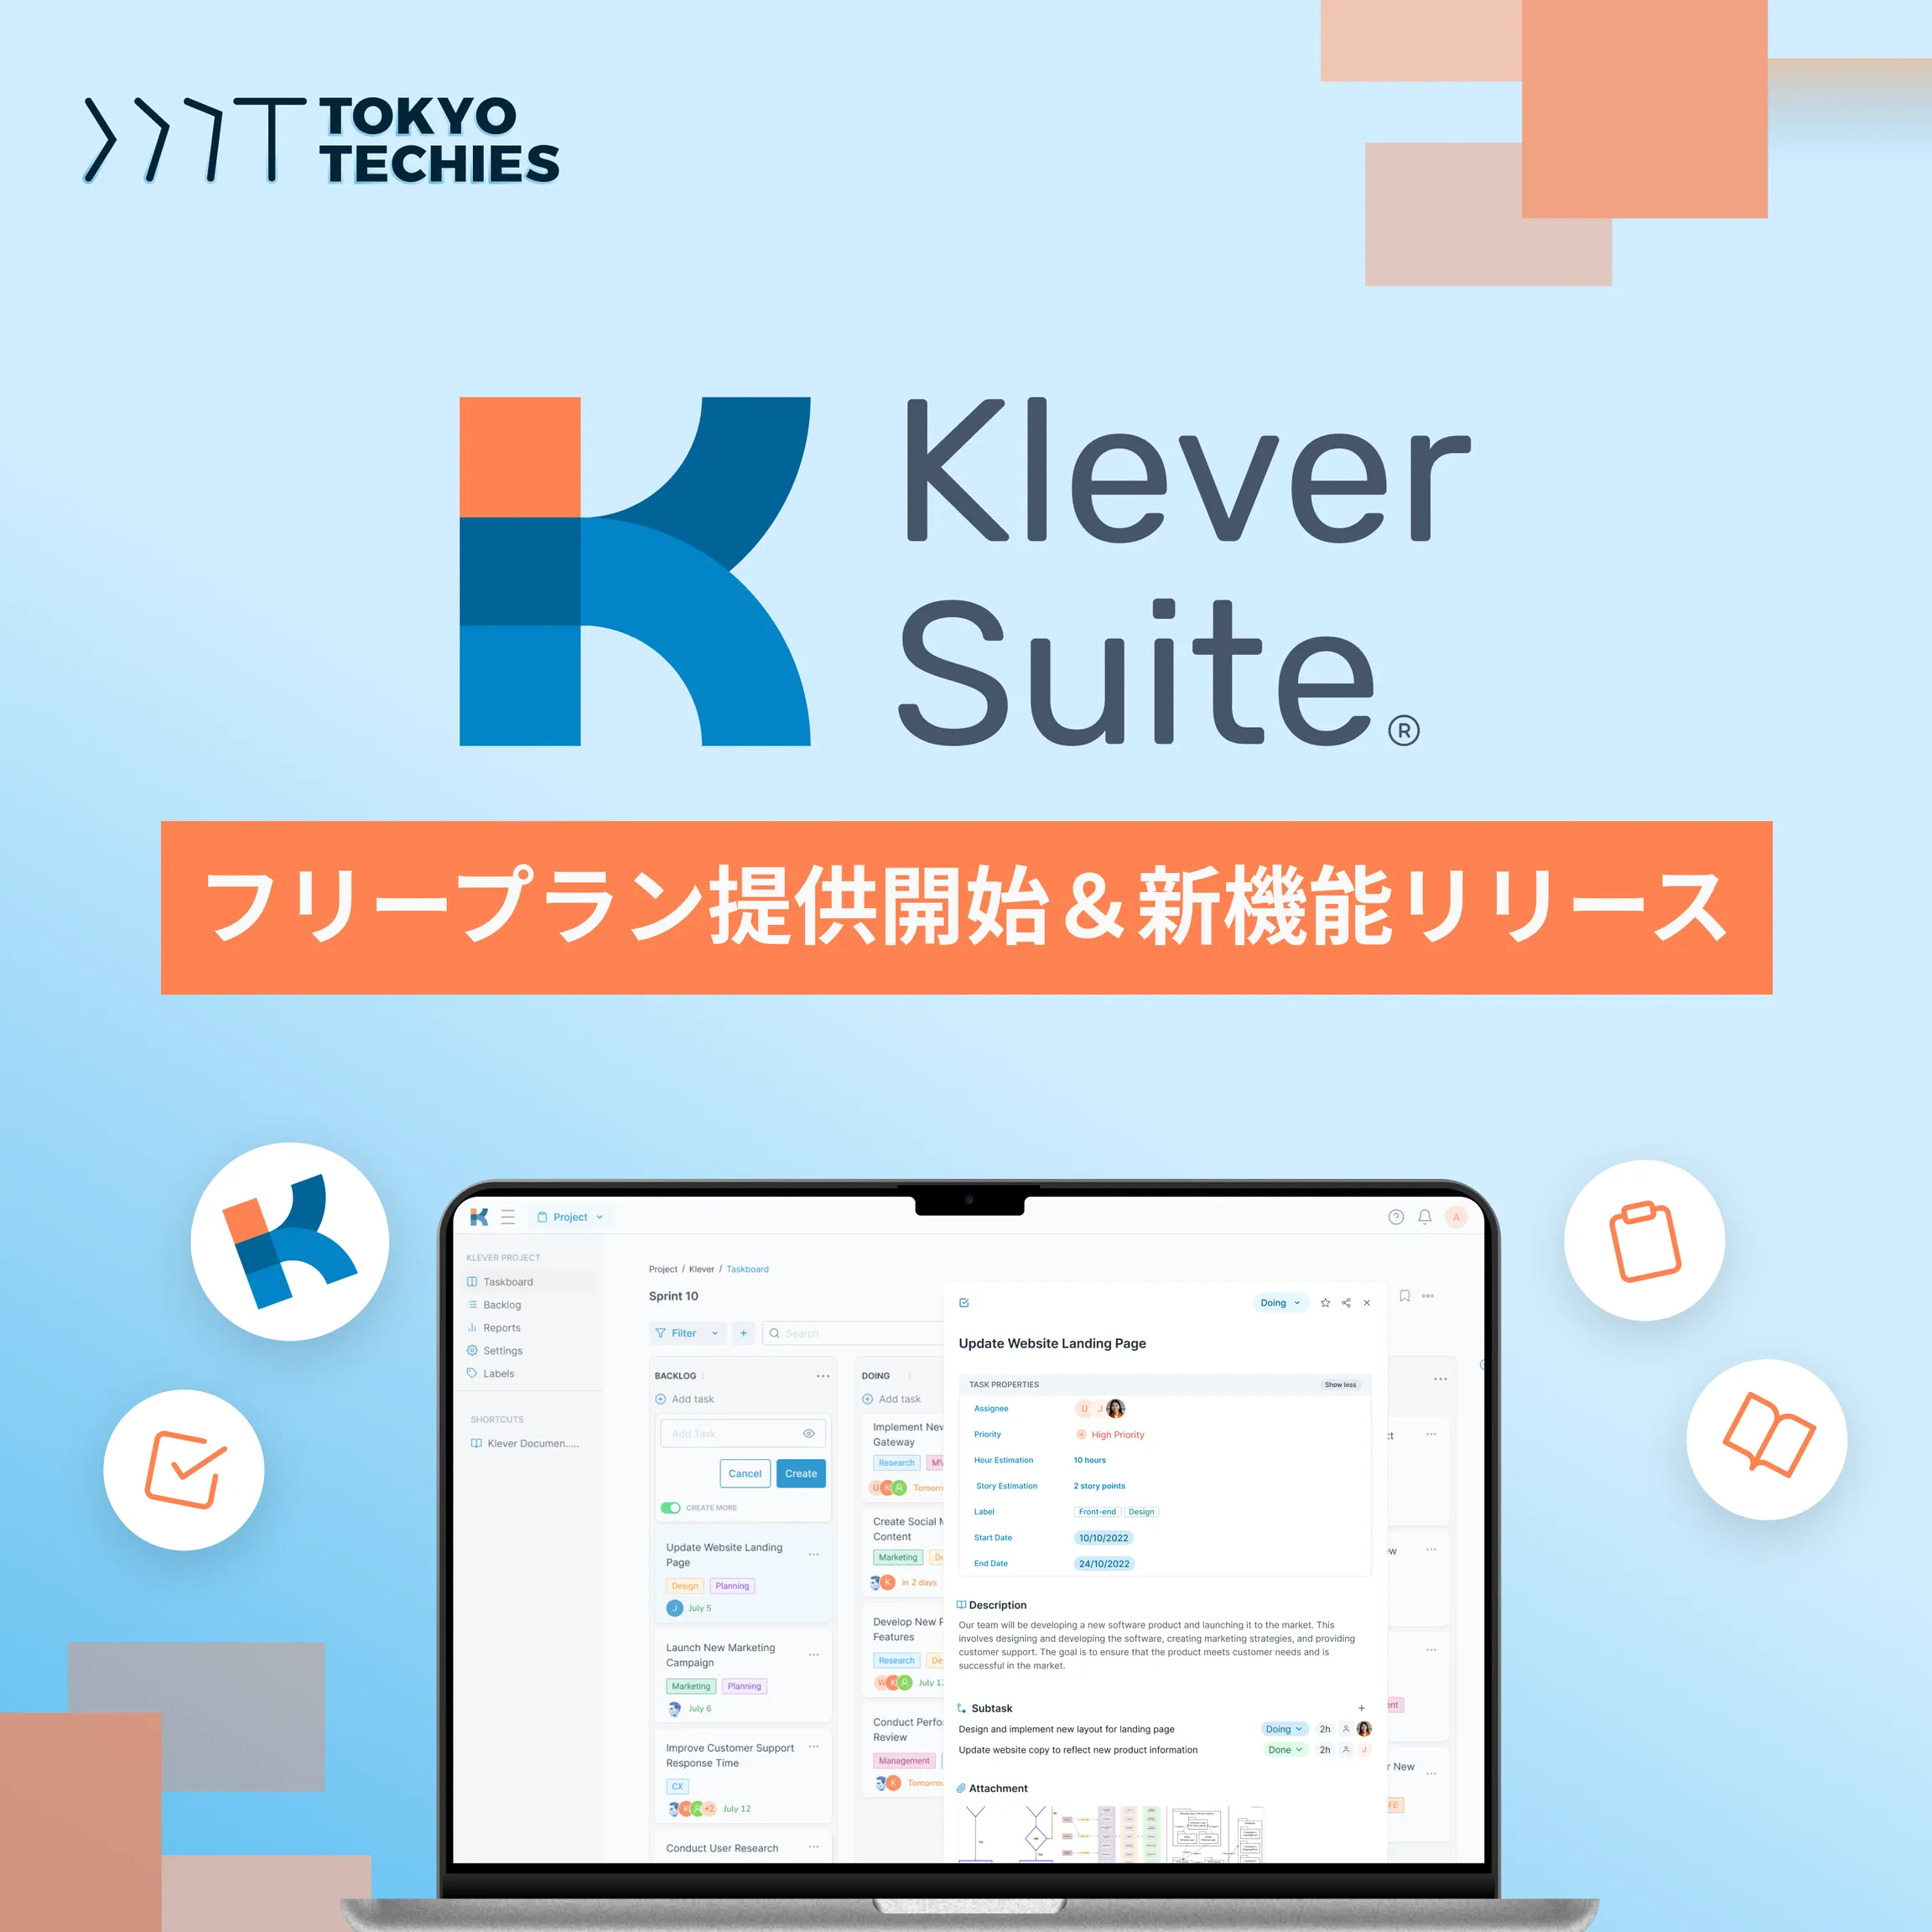 業務効率化ツール「Klever Suite」の新バージョンを発表